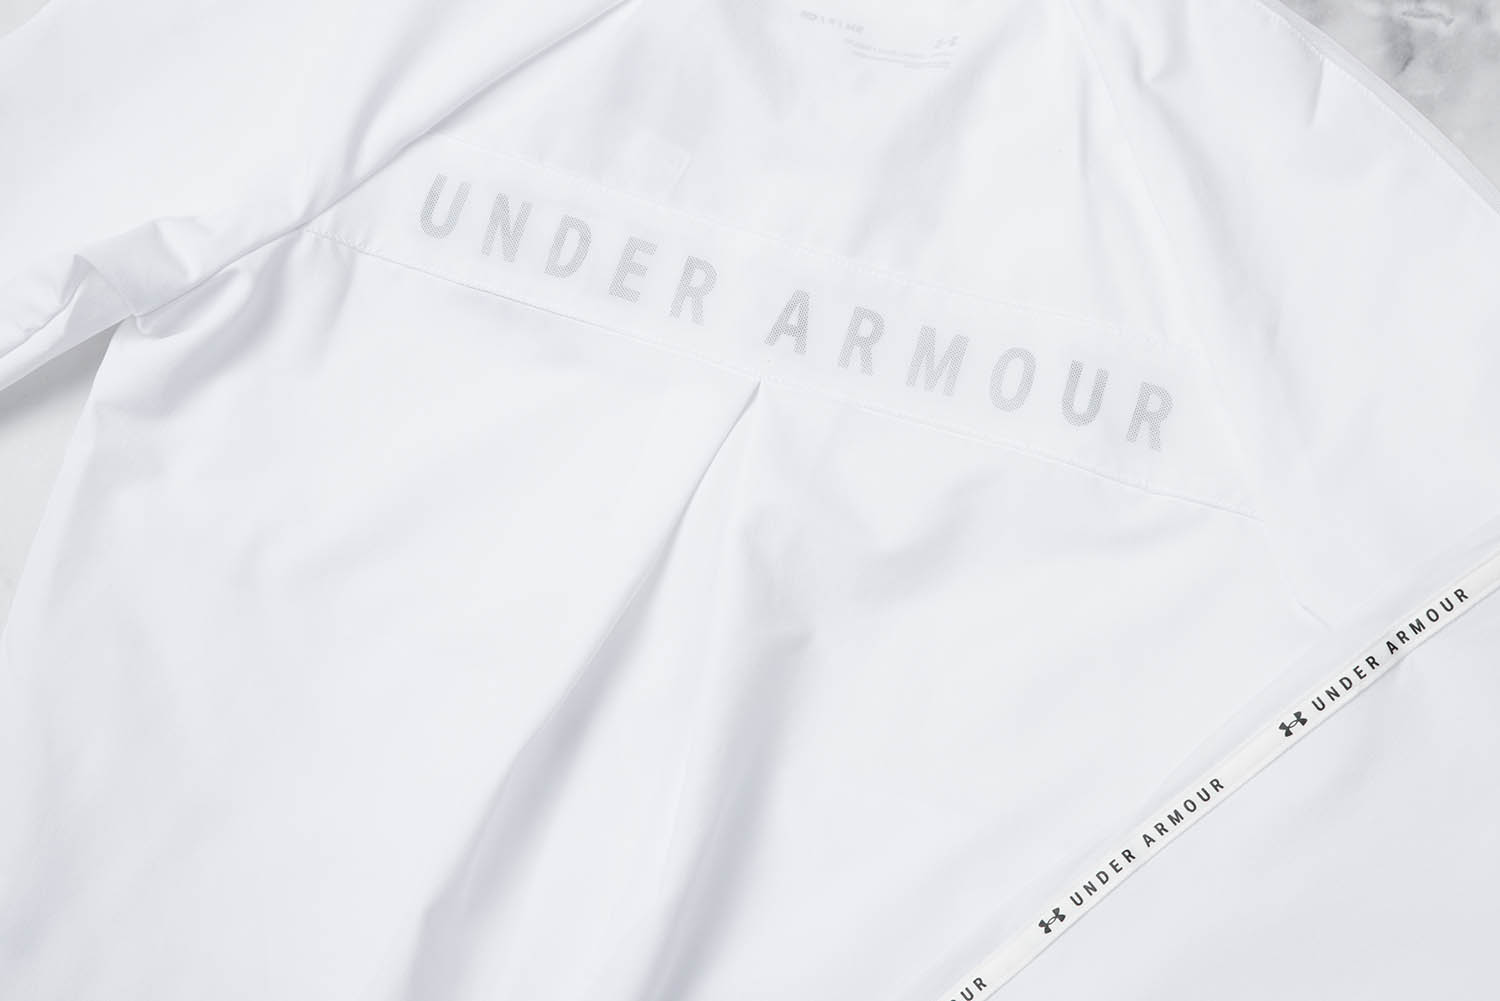 運動外套背面之 Under Armour 字樣與網布的設計